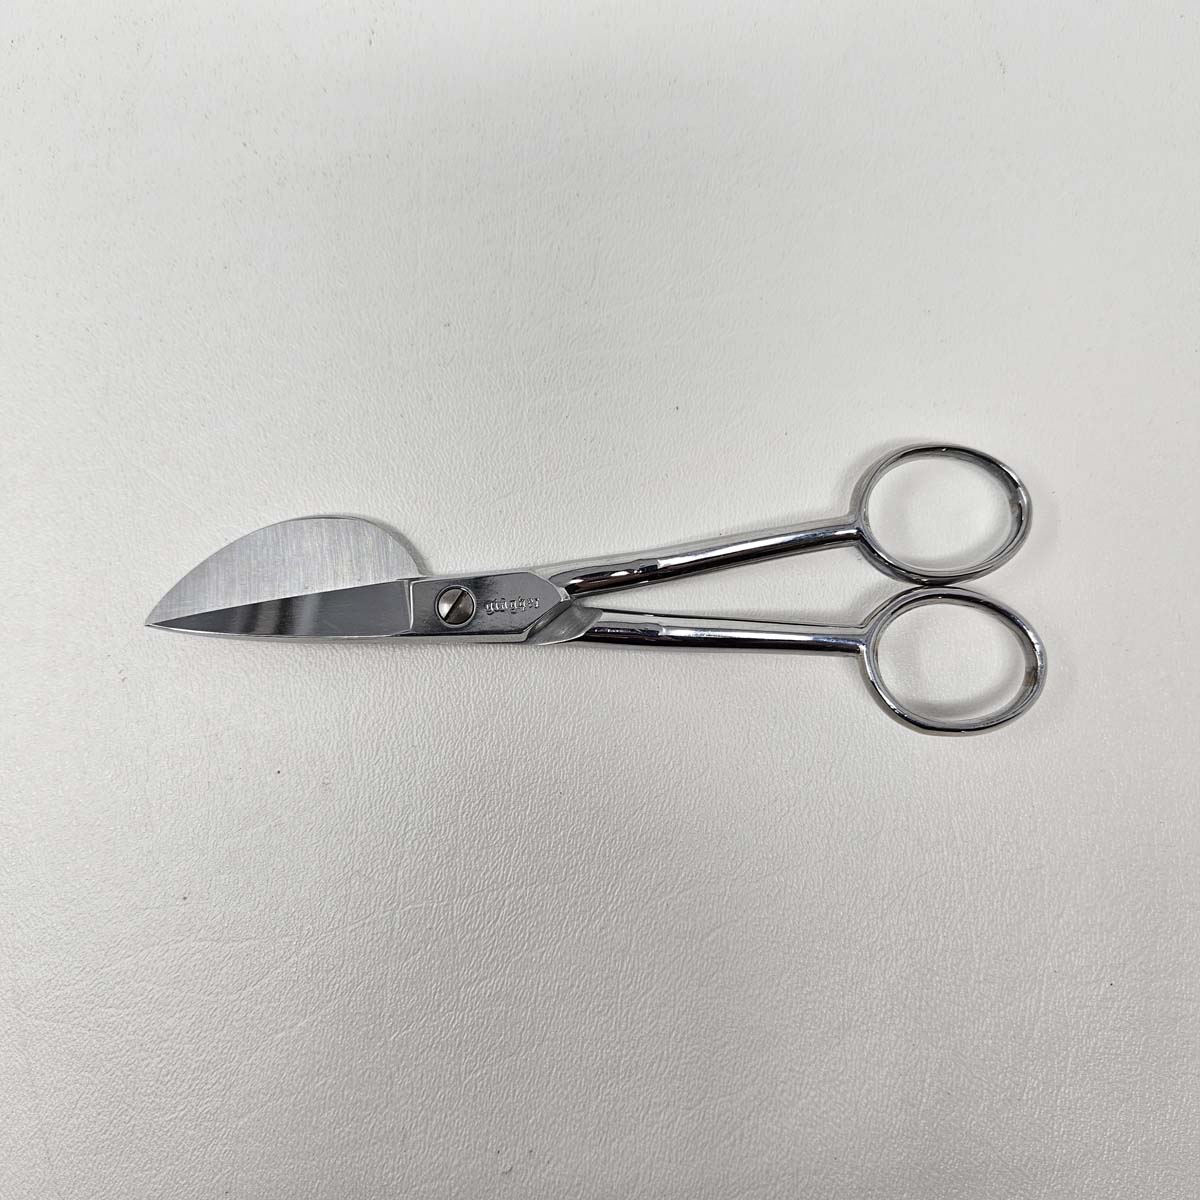 Gingher 6 Applique Scissors